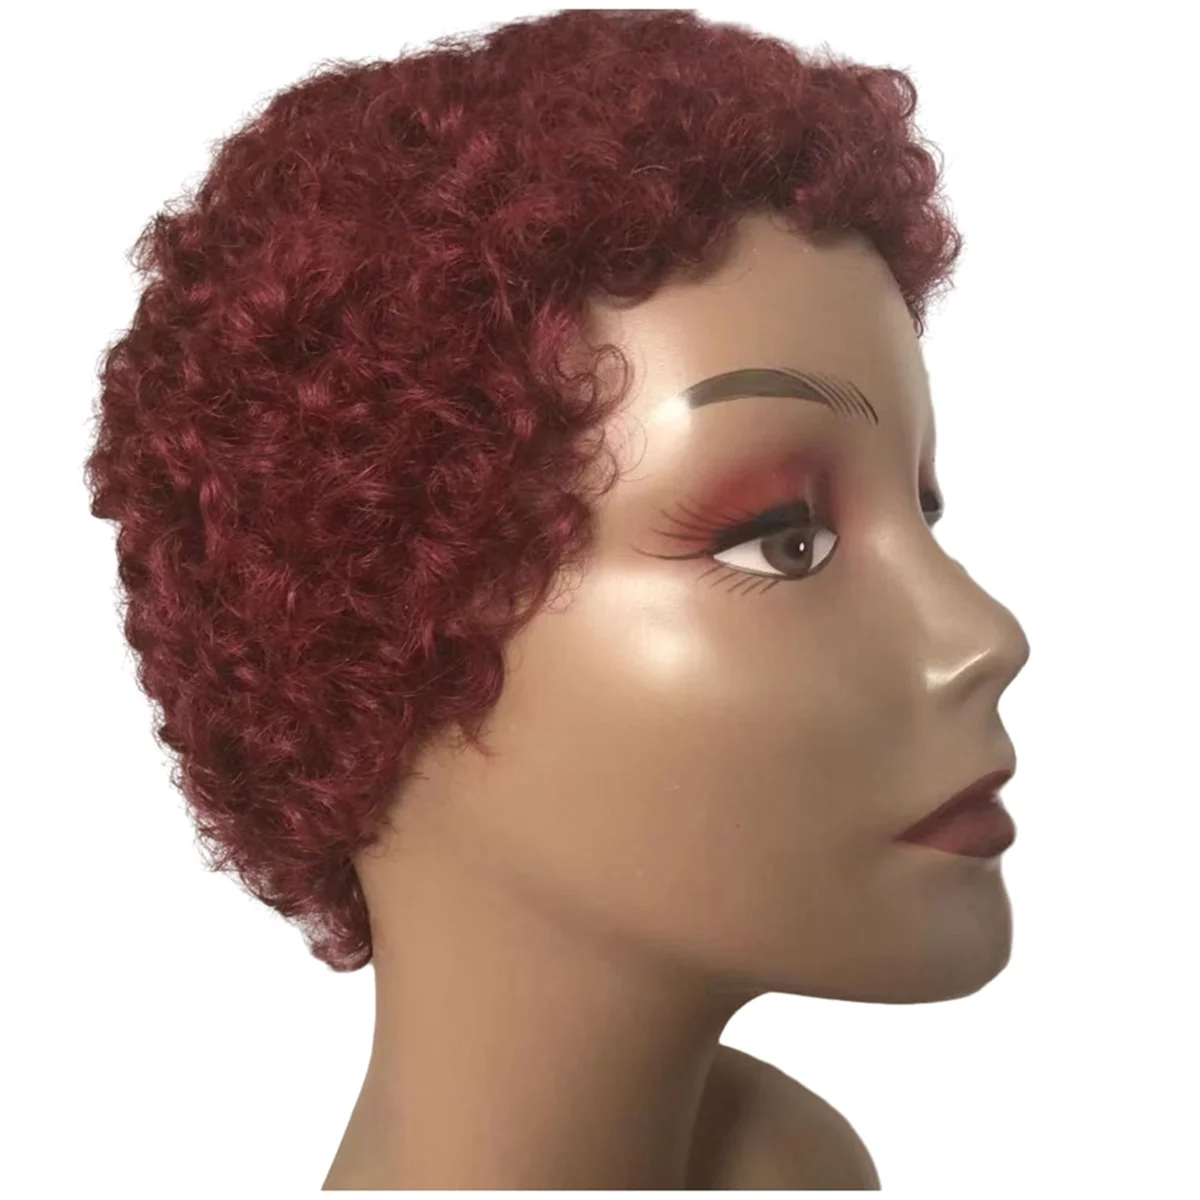 

Ветер Летающий дешевый короткий вьющийся человеческий волос парик для женщин Remy бразильский хиар парик афро вьющийся короткий человеческий парик, красный